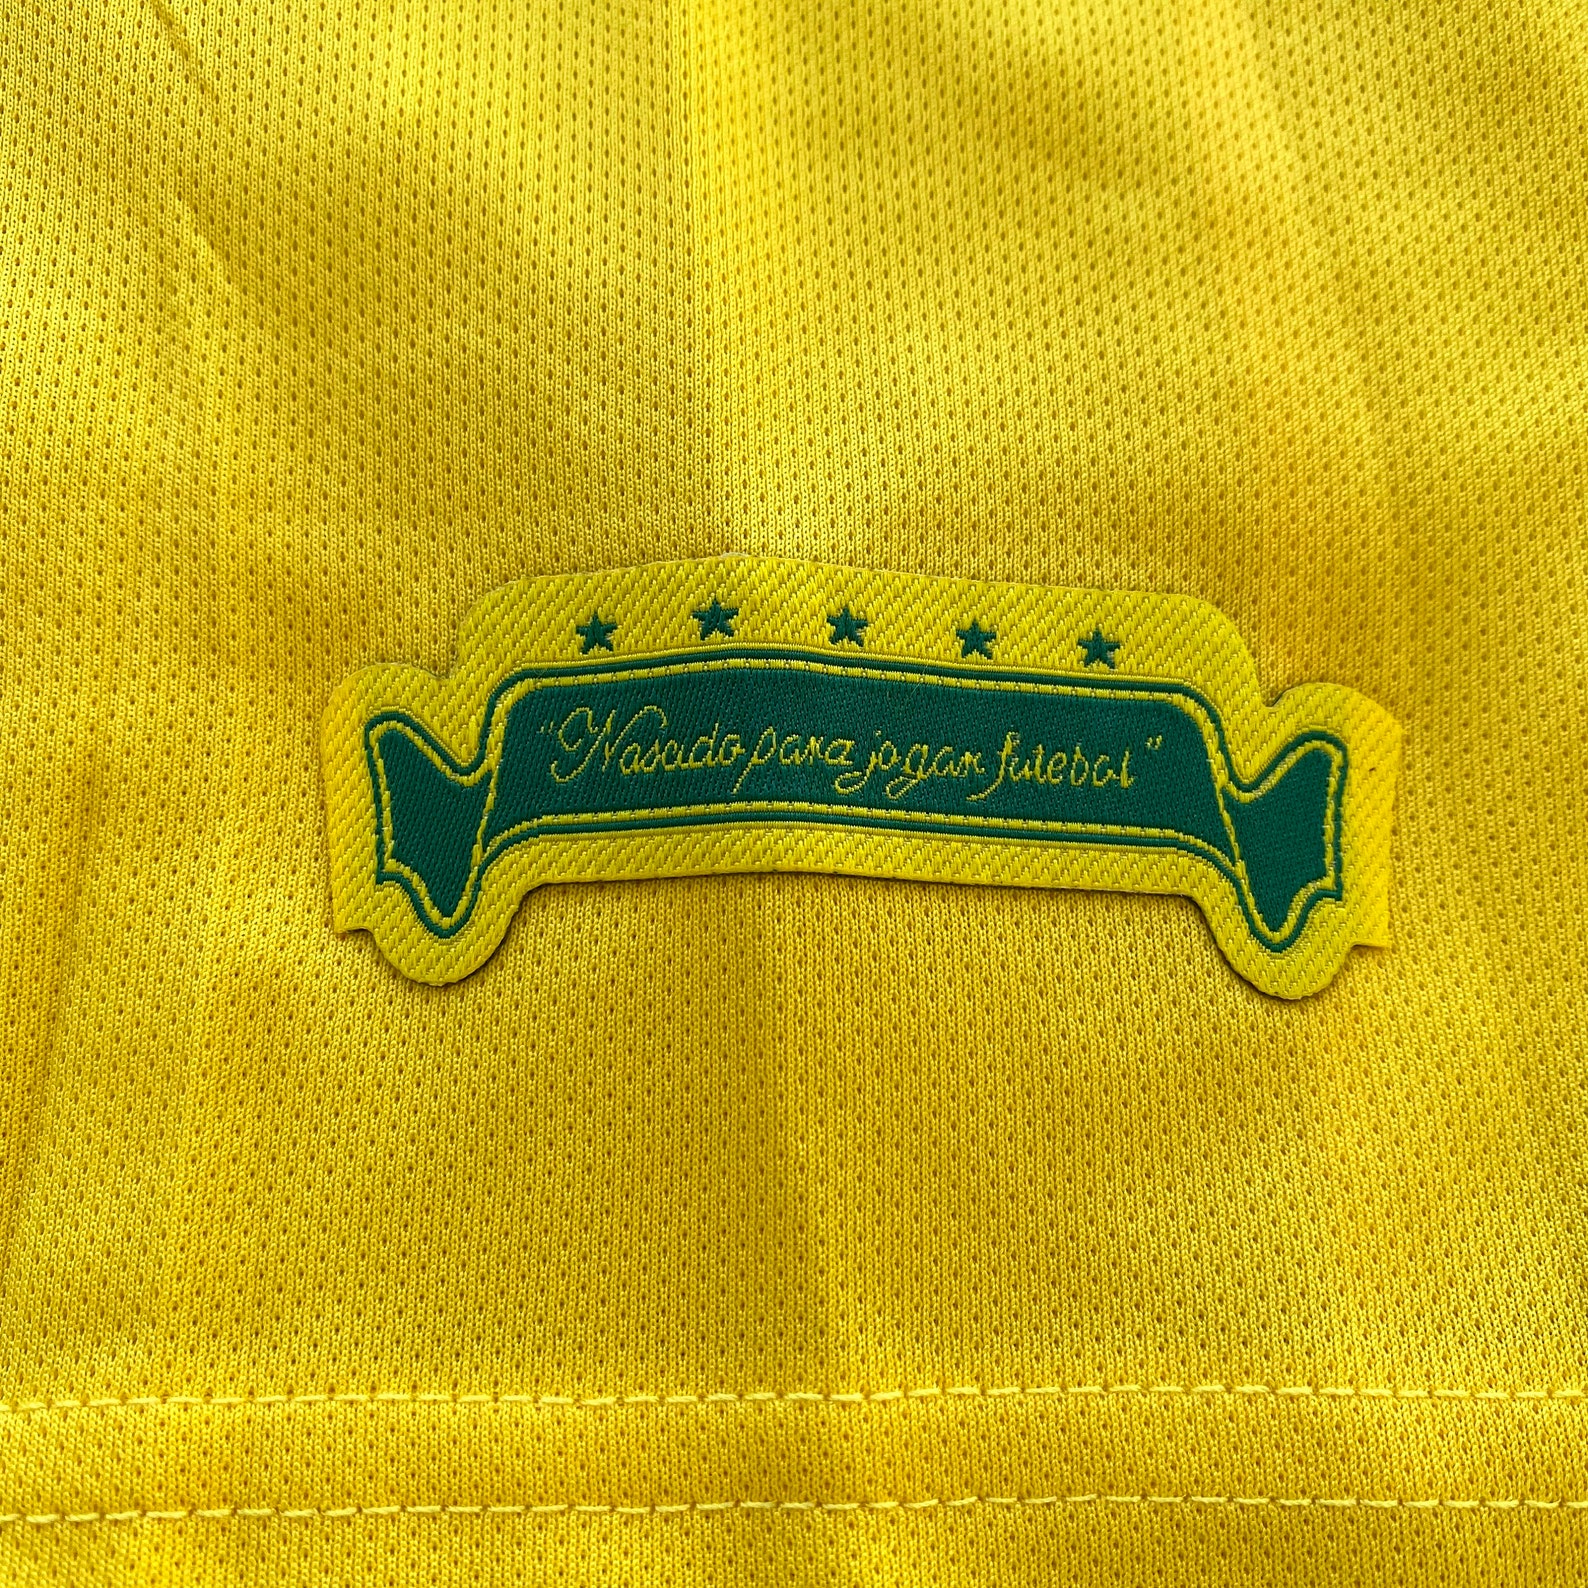 Brazil 2006 World Cup Jersey Ronaldo R9 Brazil Kit Retro | Etsy